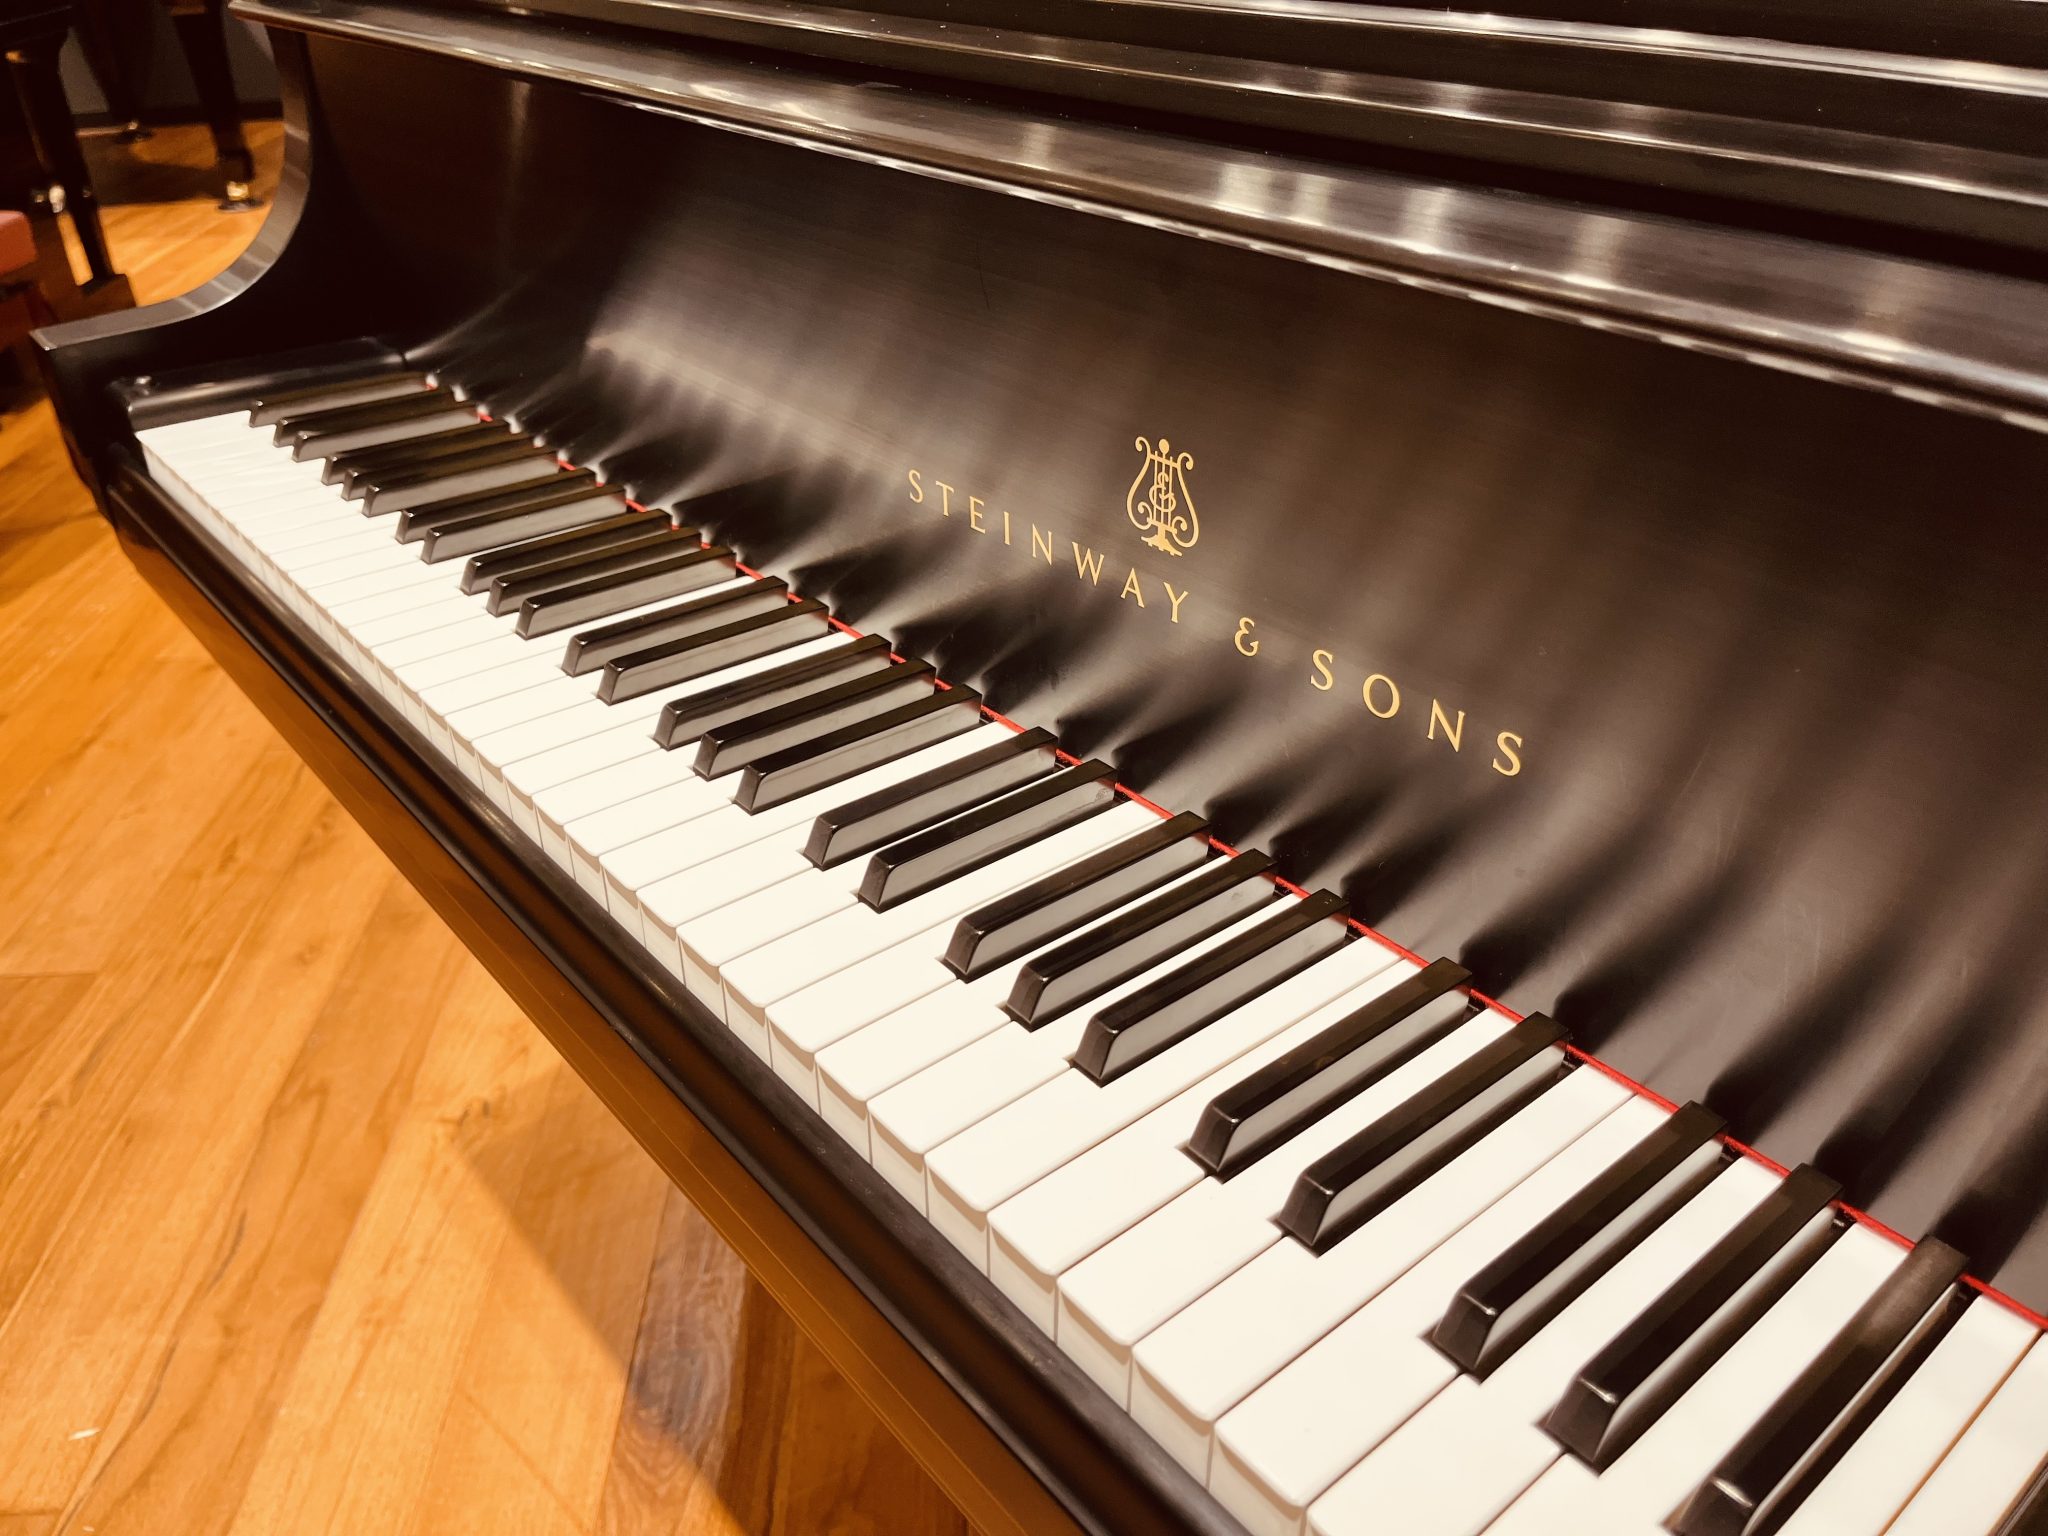 島村楽器ピアノショールーム広島（イオンモール広島府中店）では、スタインウェイ中古グランドピアノを展示しております。ニューヨーク製のこちらは、弾き手の表現力を引き出す華やかで重みのある音色で、日本国内に多く流通するハンブルク（ドイツ）製とまた異なった響きを味わえます。そしてNYスタインウェイを象徴する […]